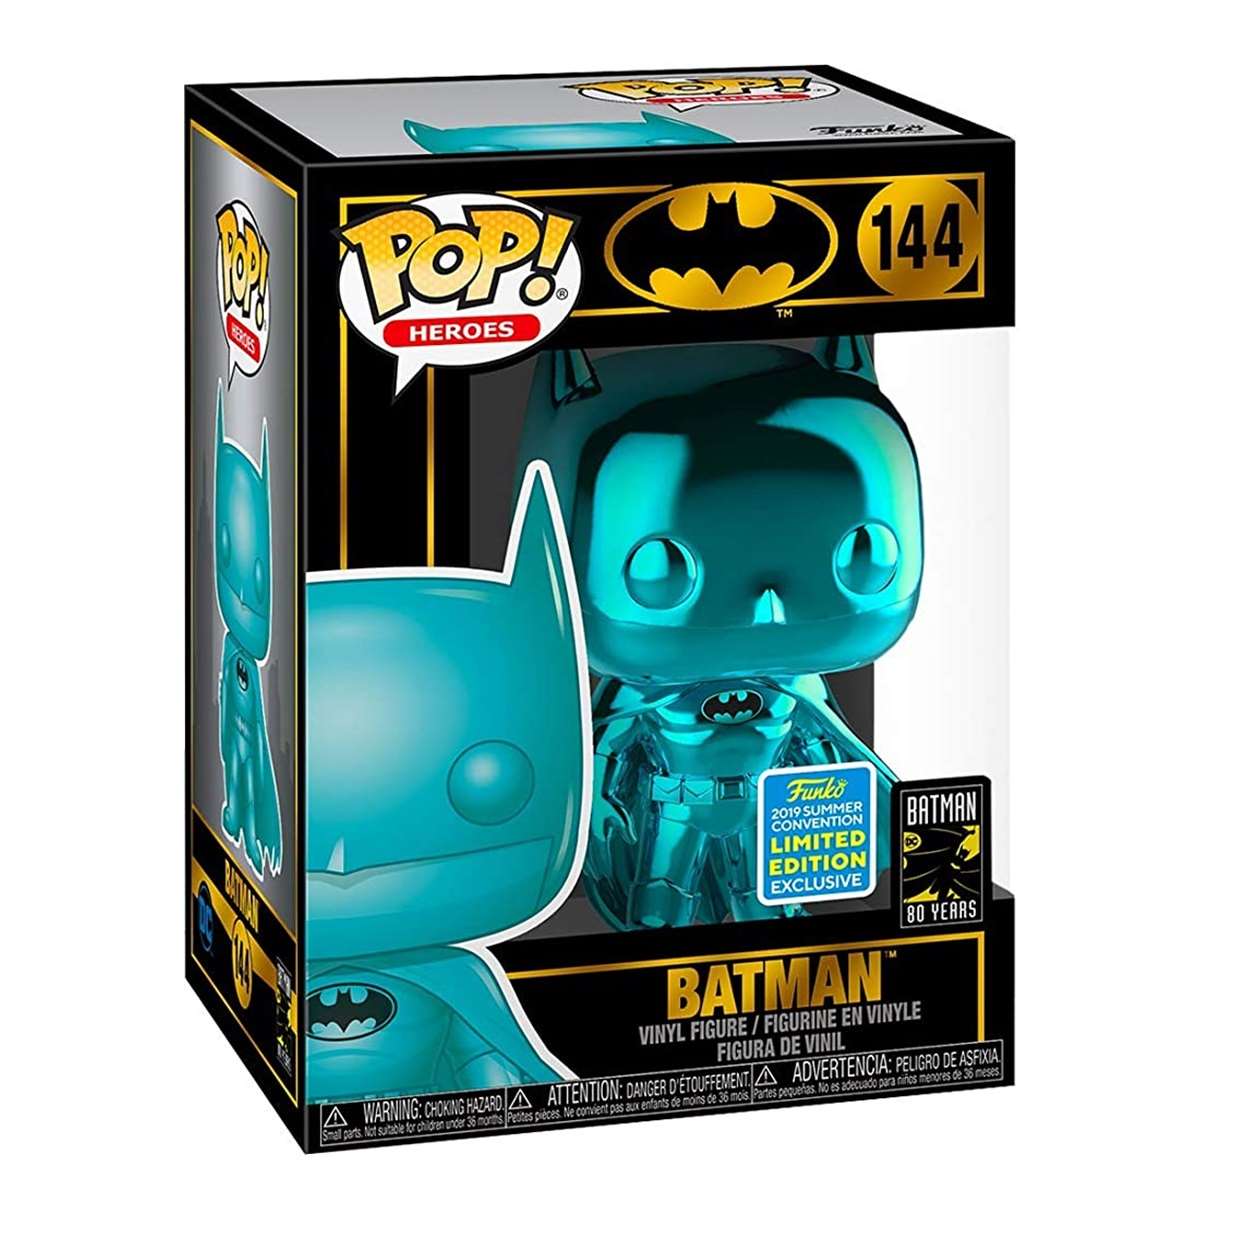 Batman #144 Funko Pop! Chrome Edición Limitada 80th Years 